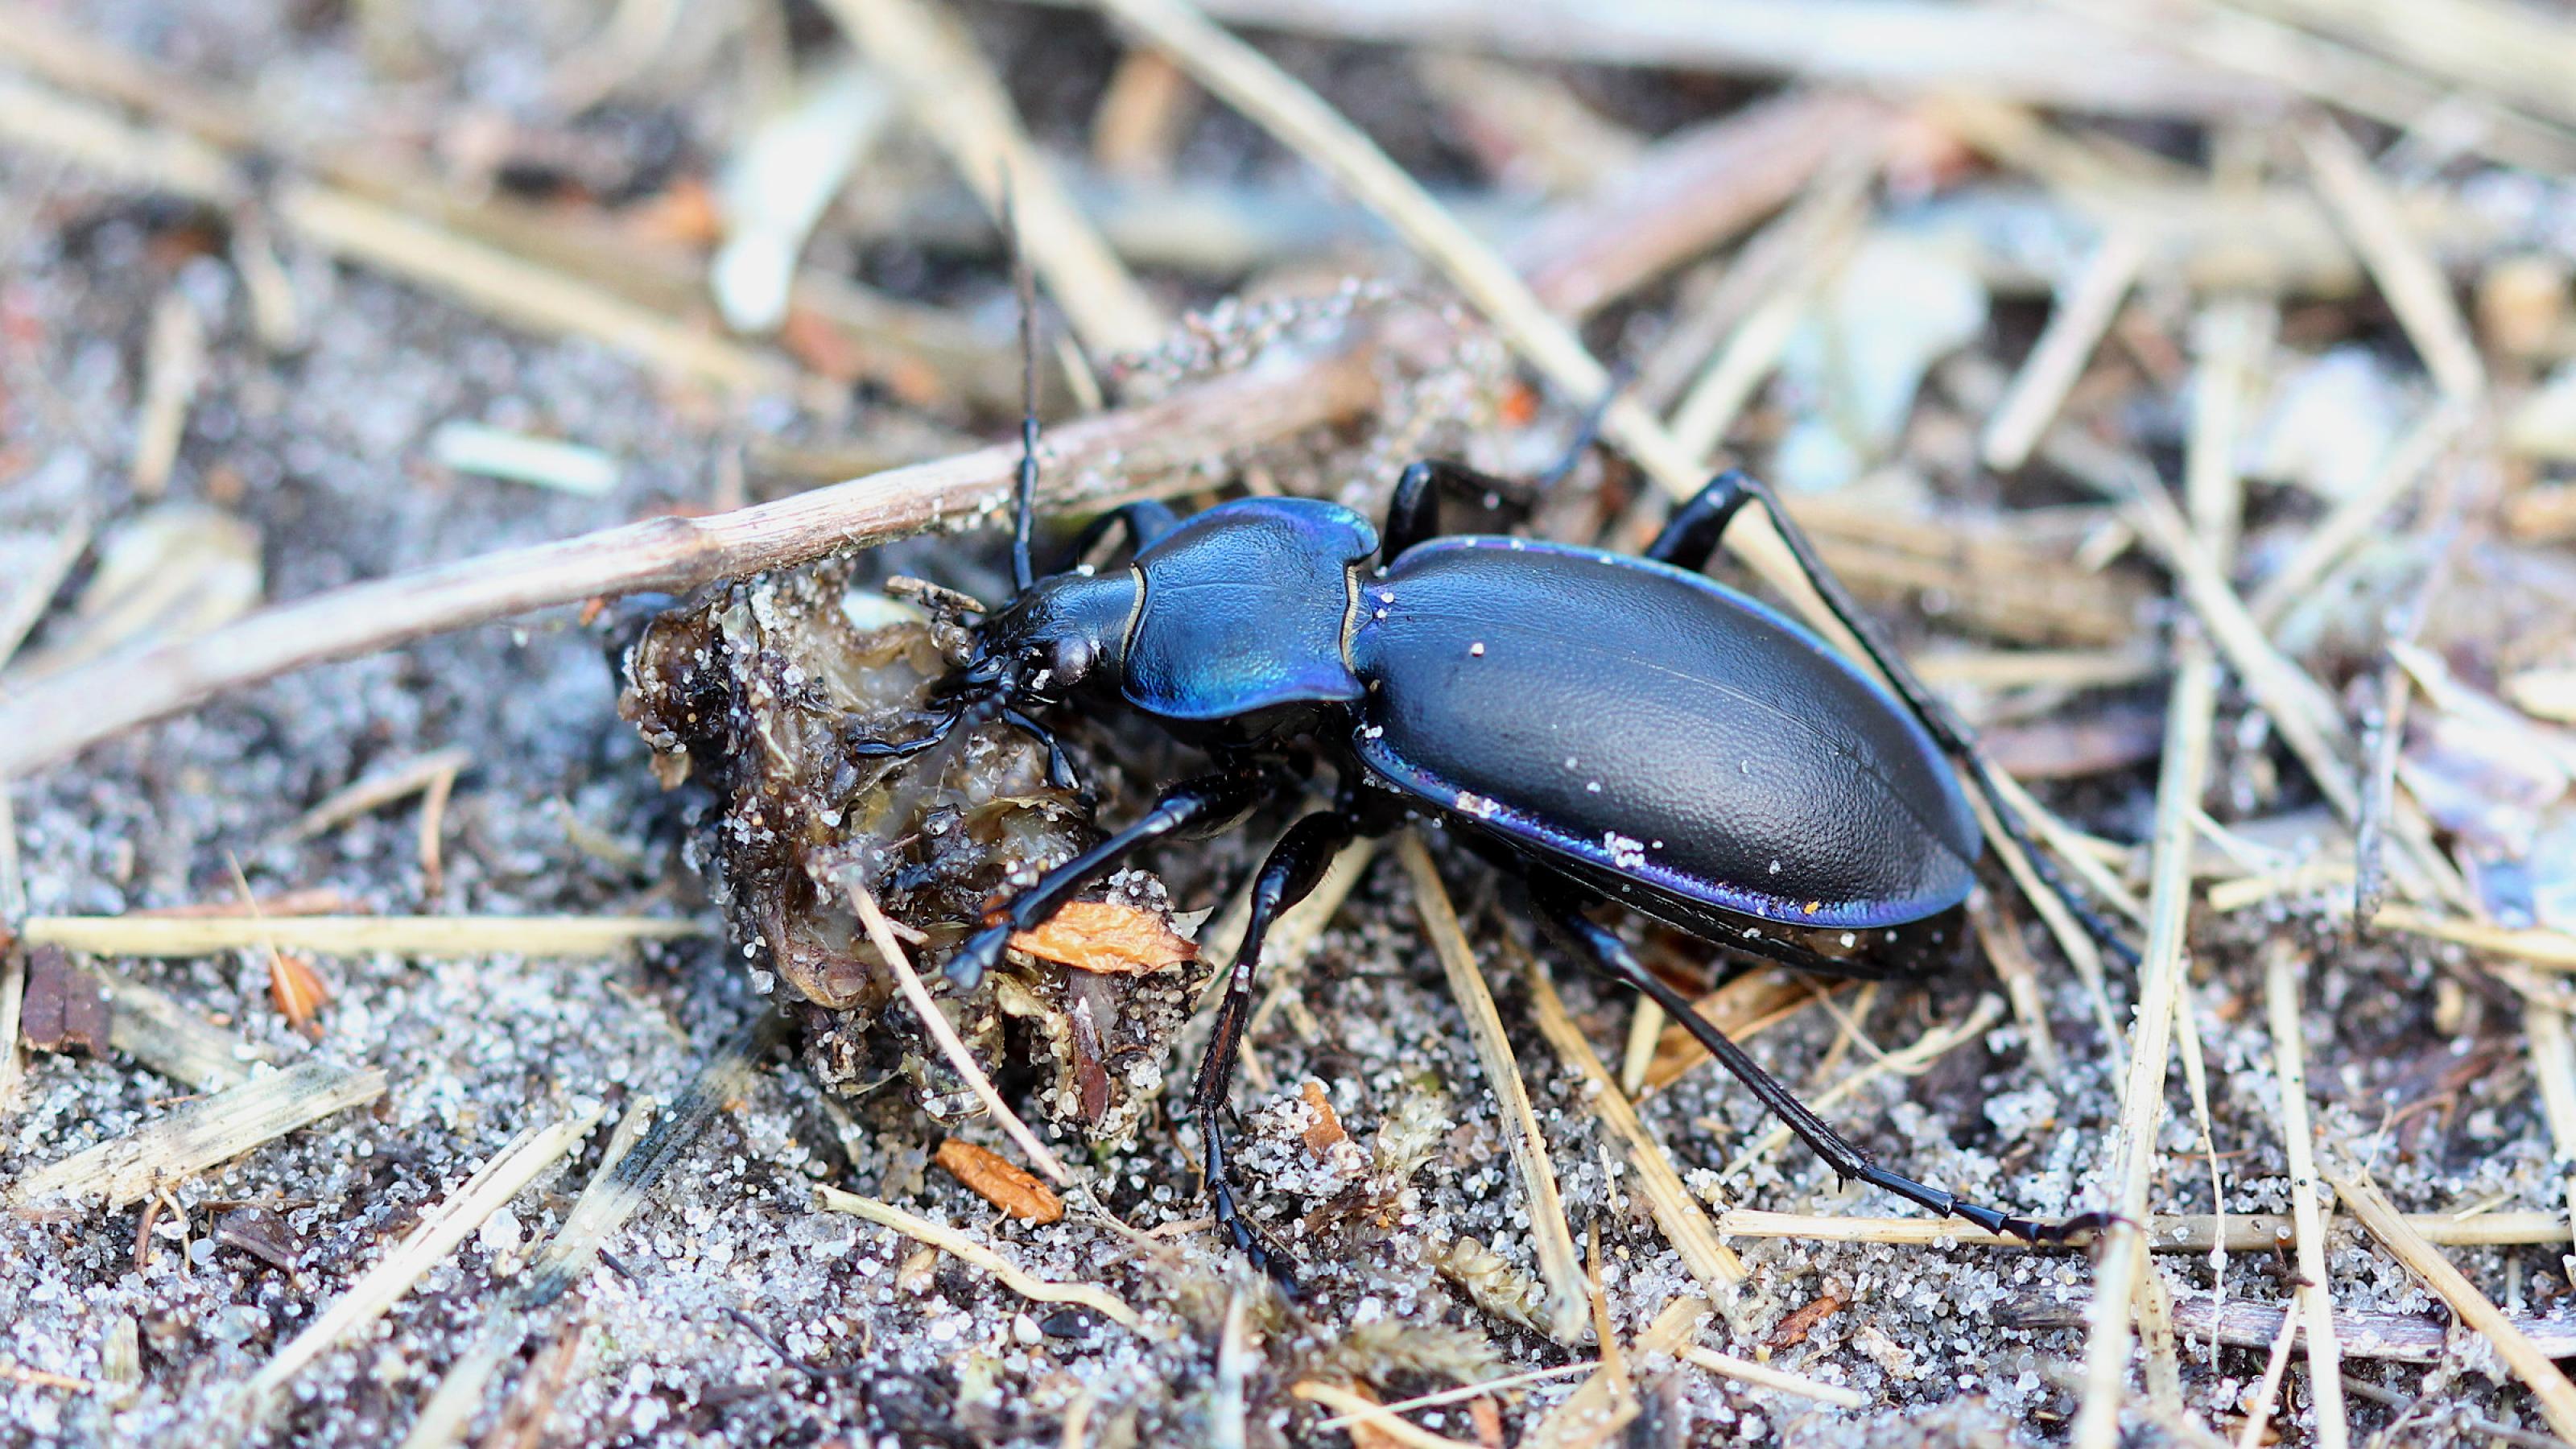 Ein großer schwarzer Käfer, der violett-blau schimmert, läuft über sandigen Boden, auf dem Ästchen und Grashalme liegen.